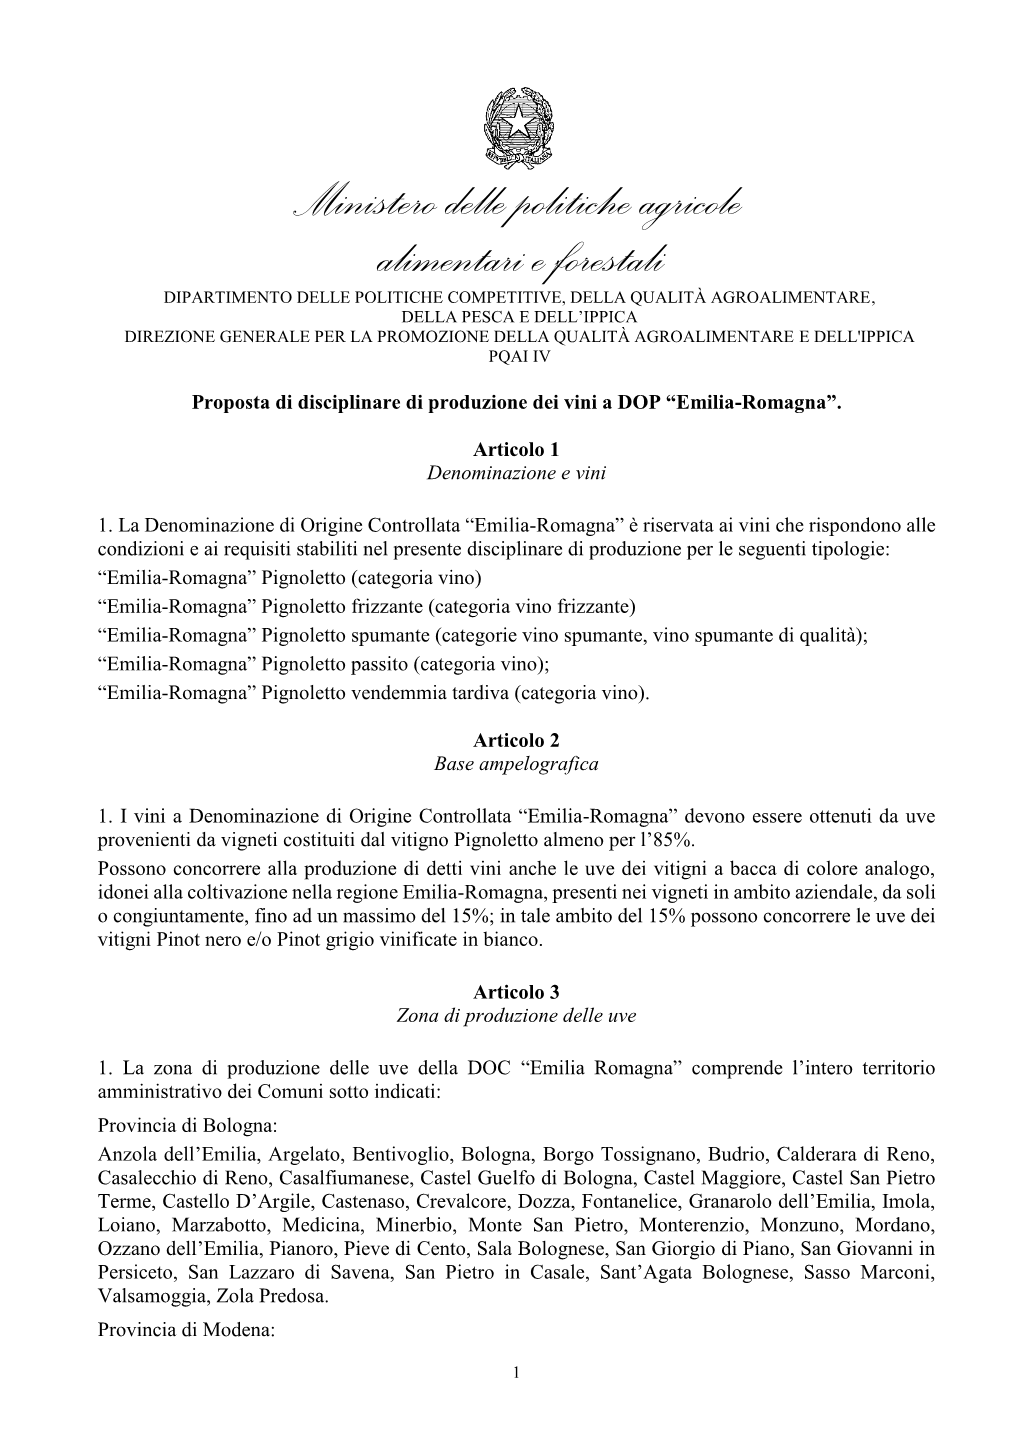 PDF: Emilia Romagna DOP DISCIPL. 20 Apr. 2021